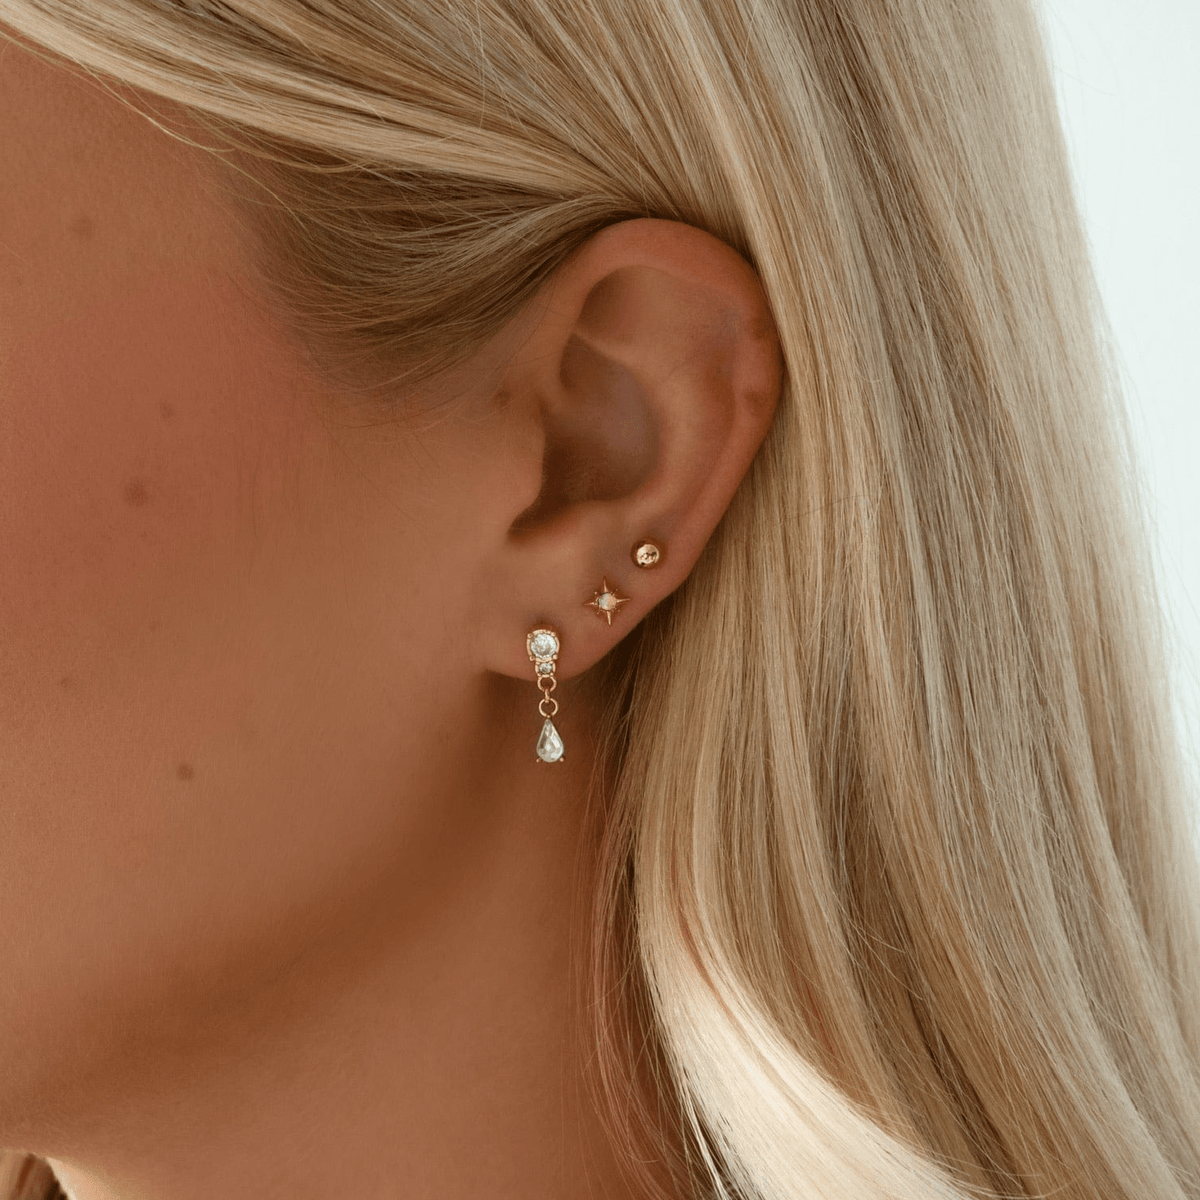 Bohomoon Stainless Steel Hannah Stud Earrings